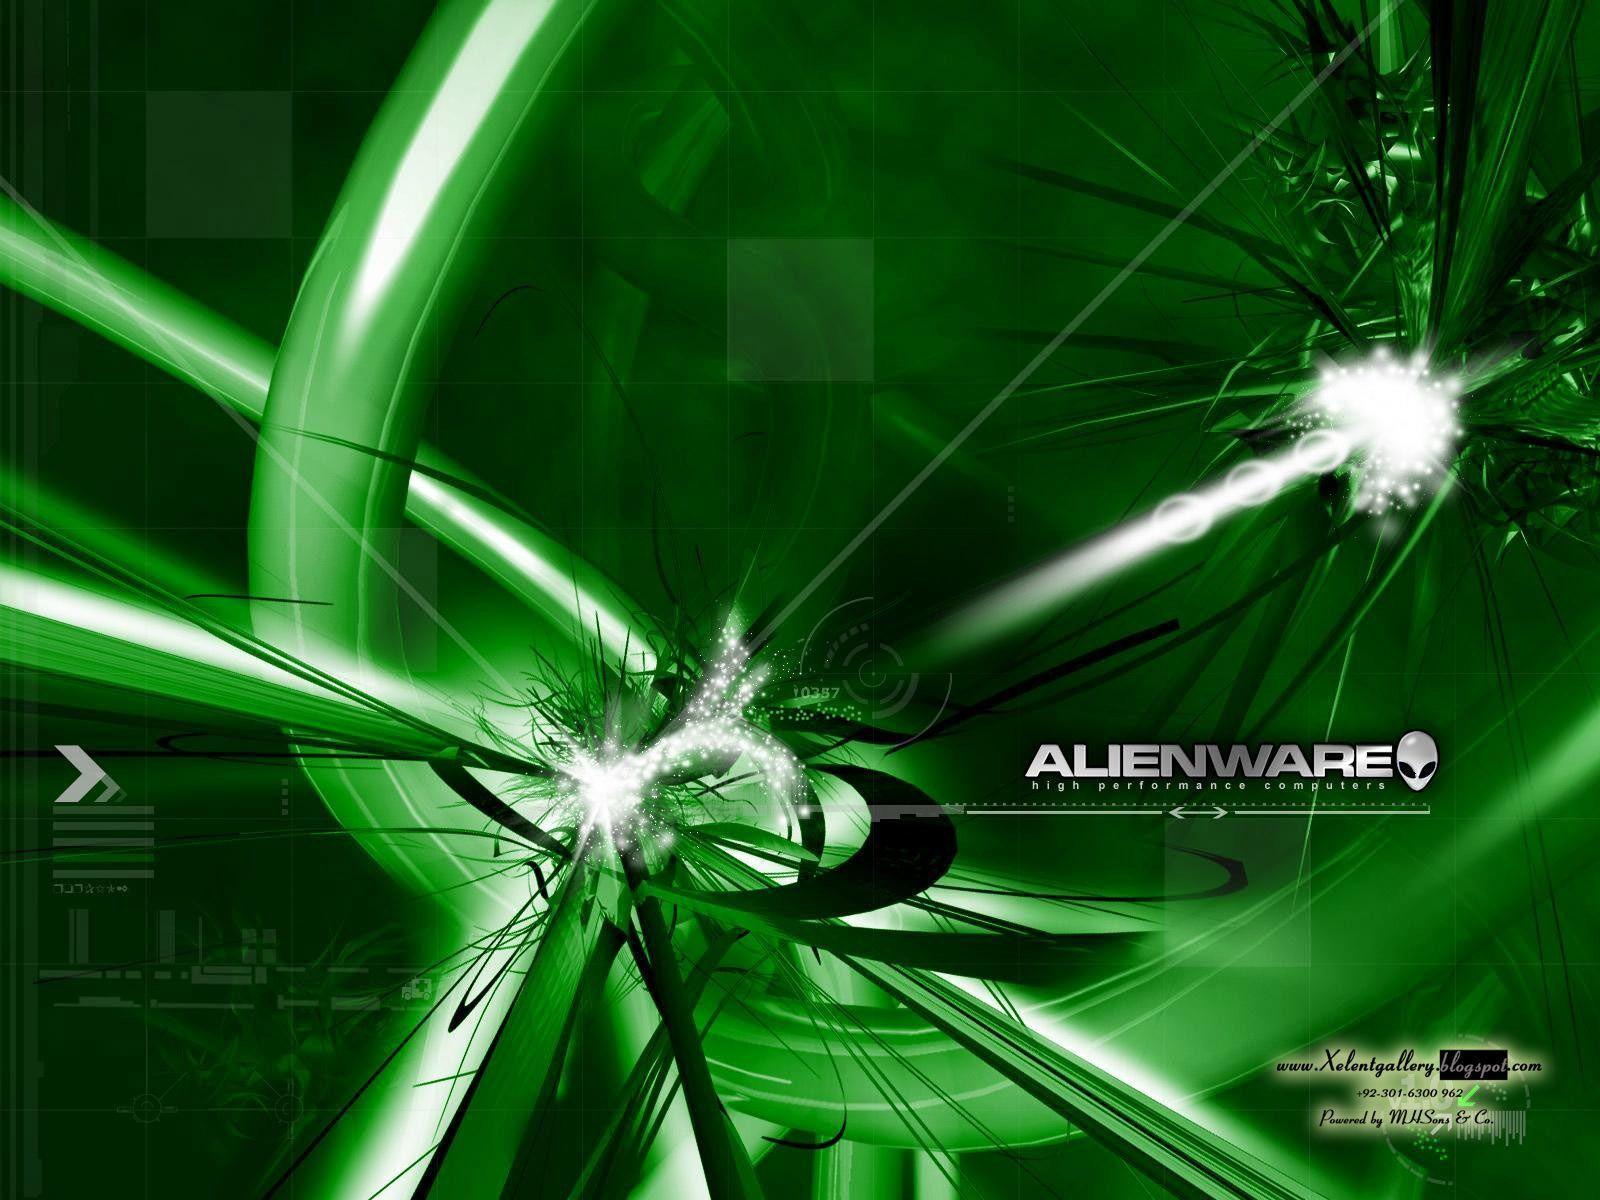 HD Alienware Wallpaper Pack (1600x1200) Xelent Gallery